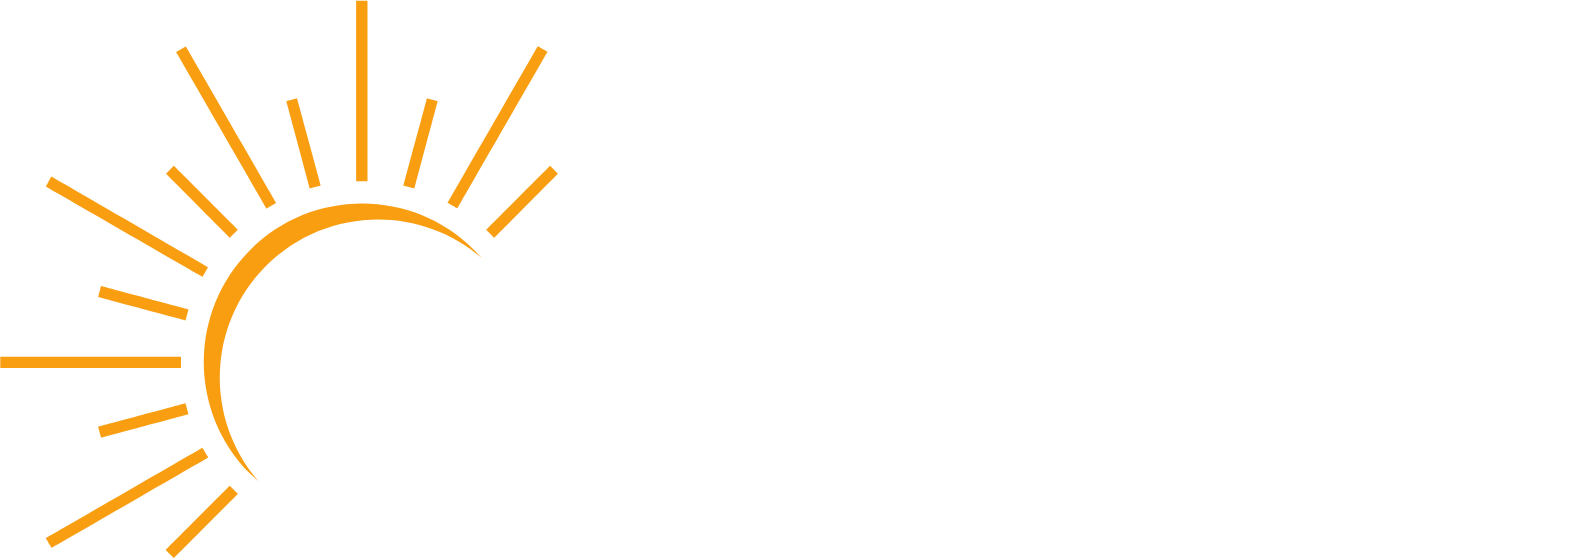 Azure Power
 Logo groß für dunkle Hintergründe (transparentes PNG)